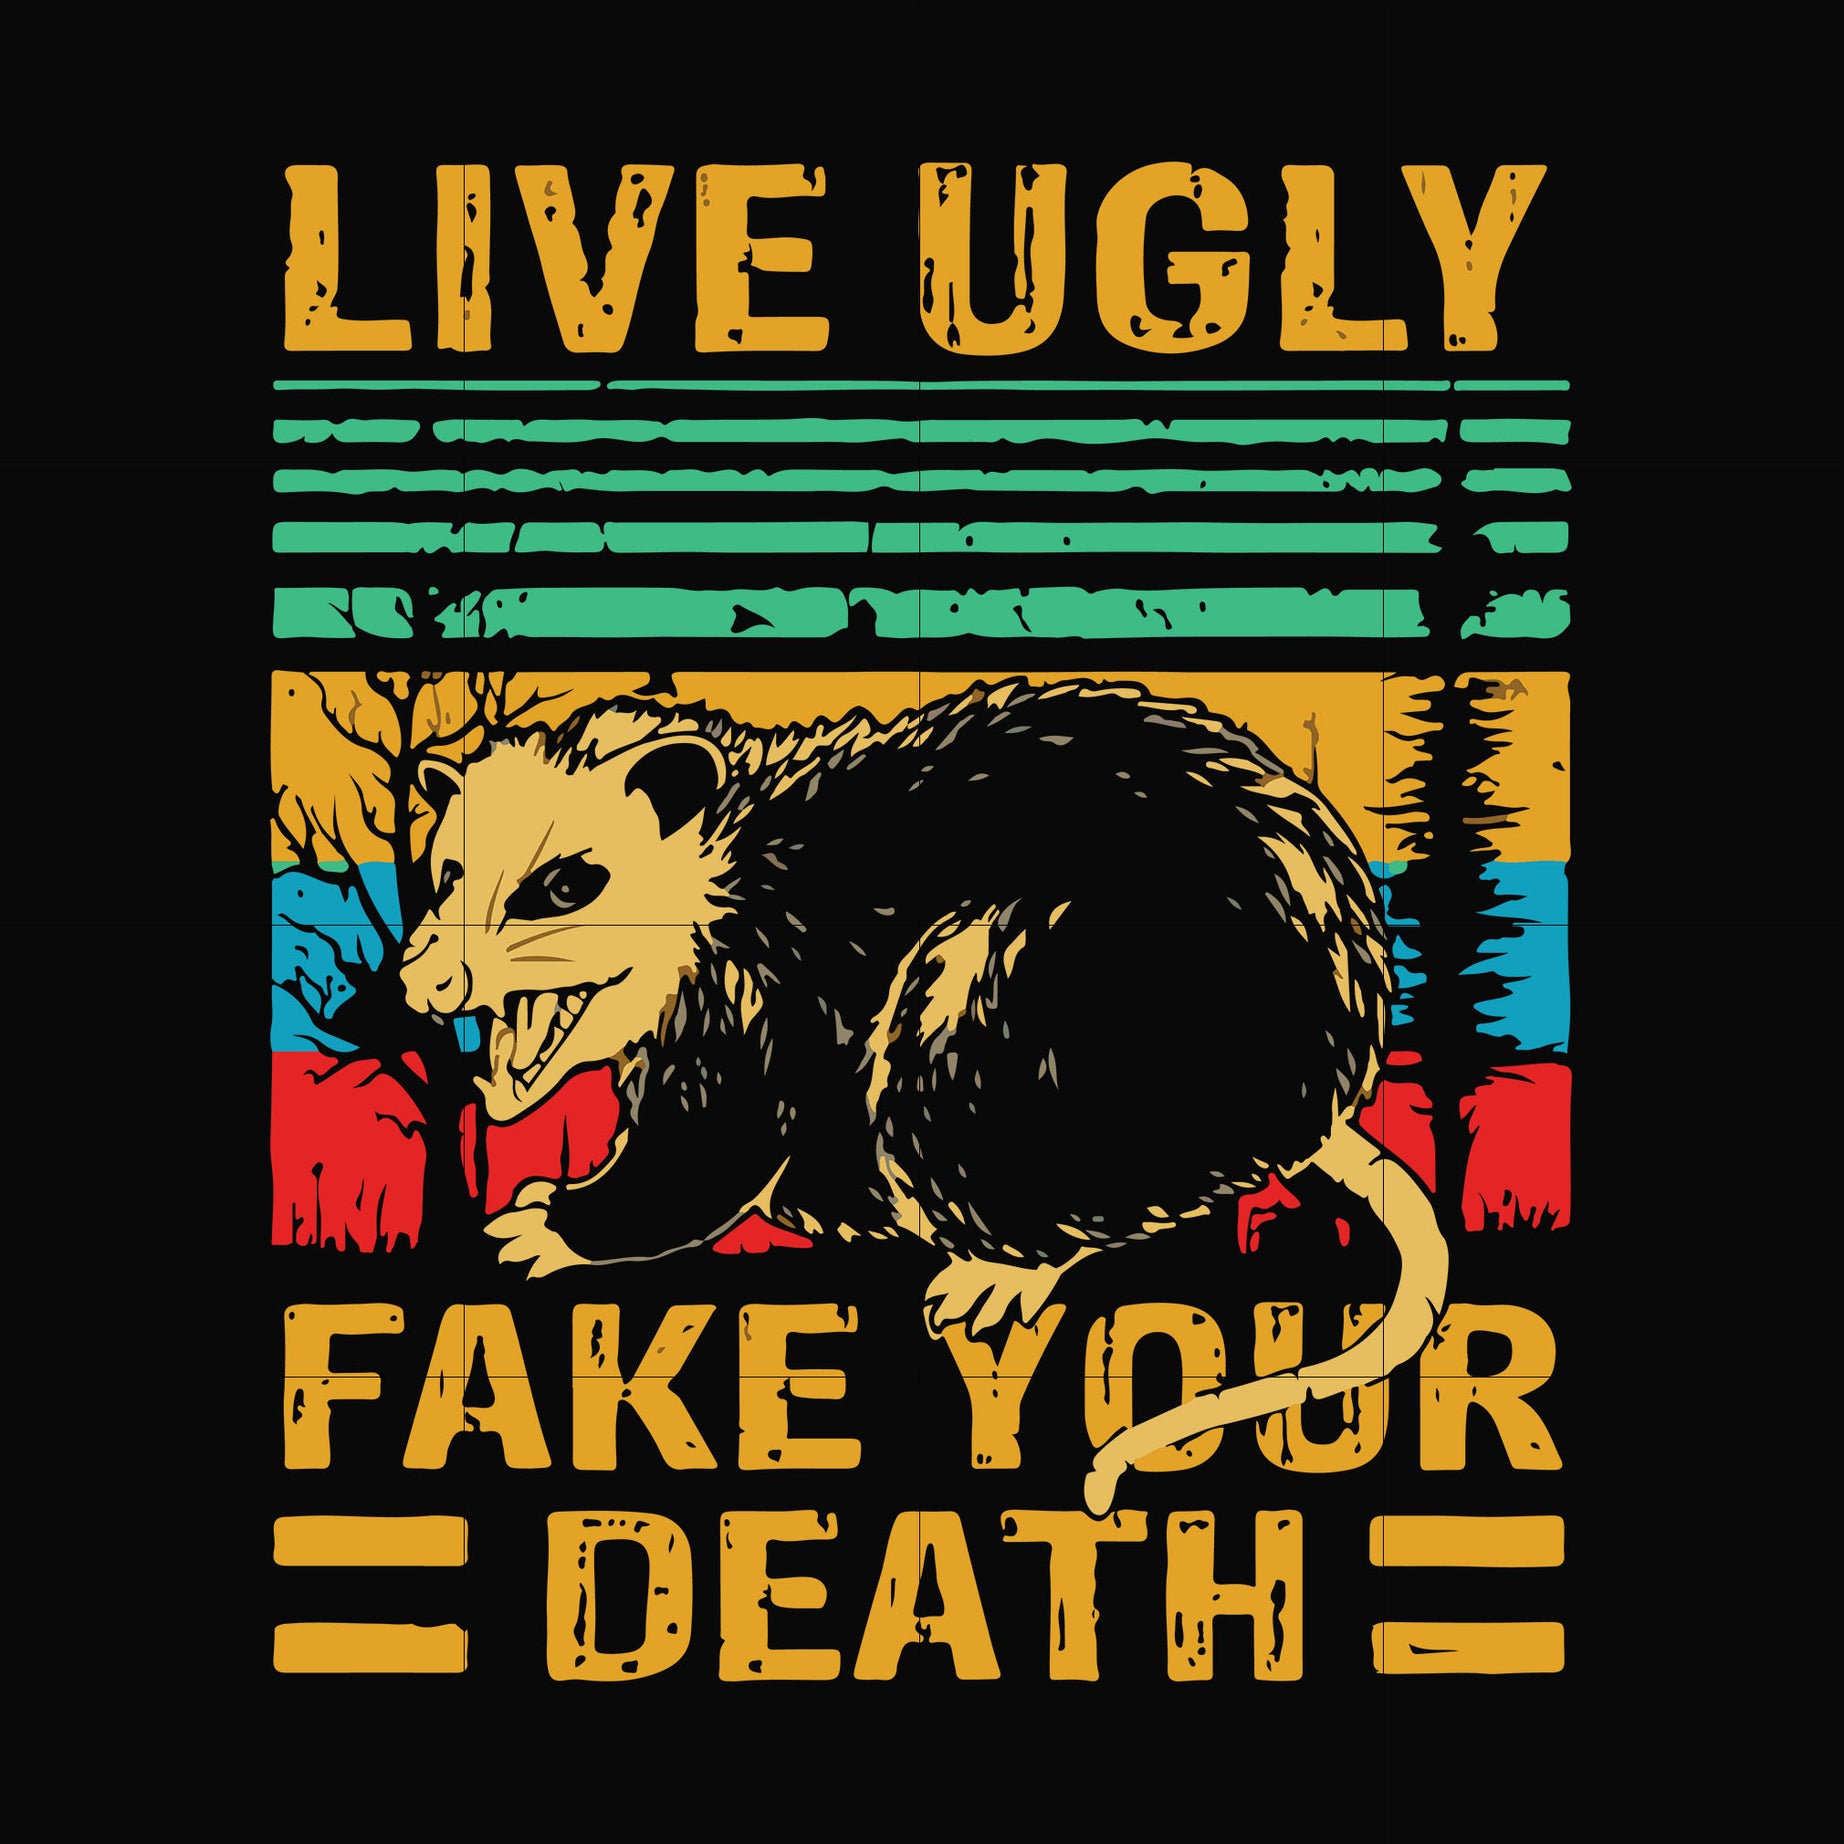 Live ugly fake your death svg, halloween svg, png, dxf, eps digital file HLW2407205